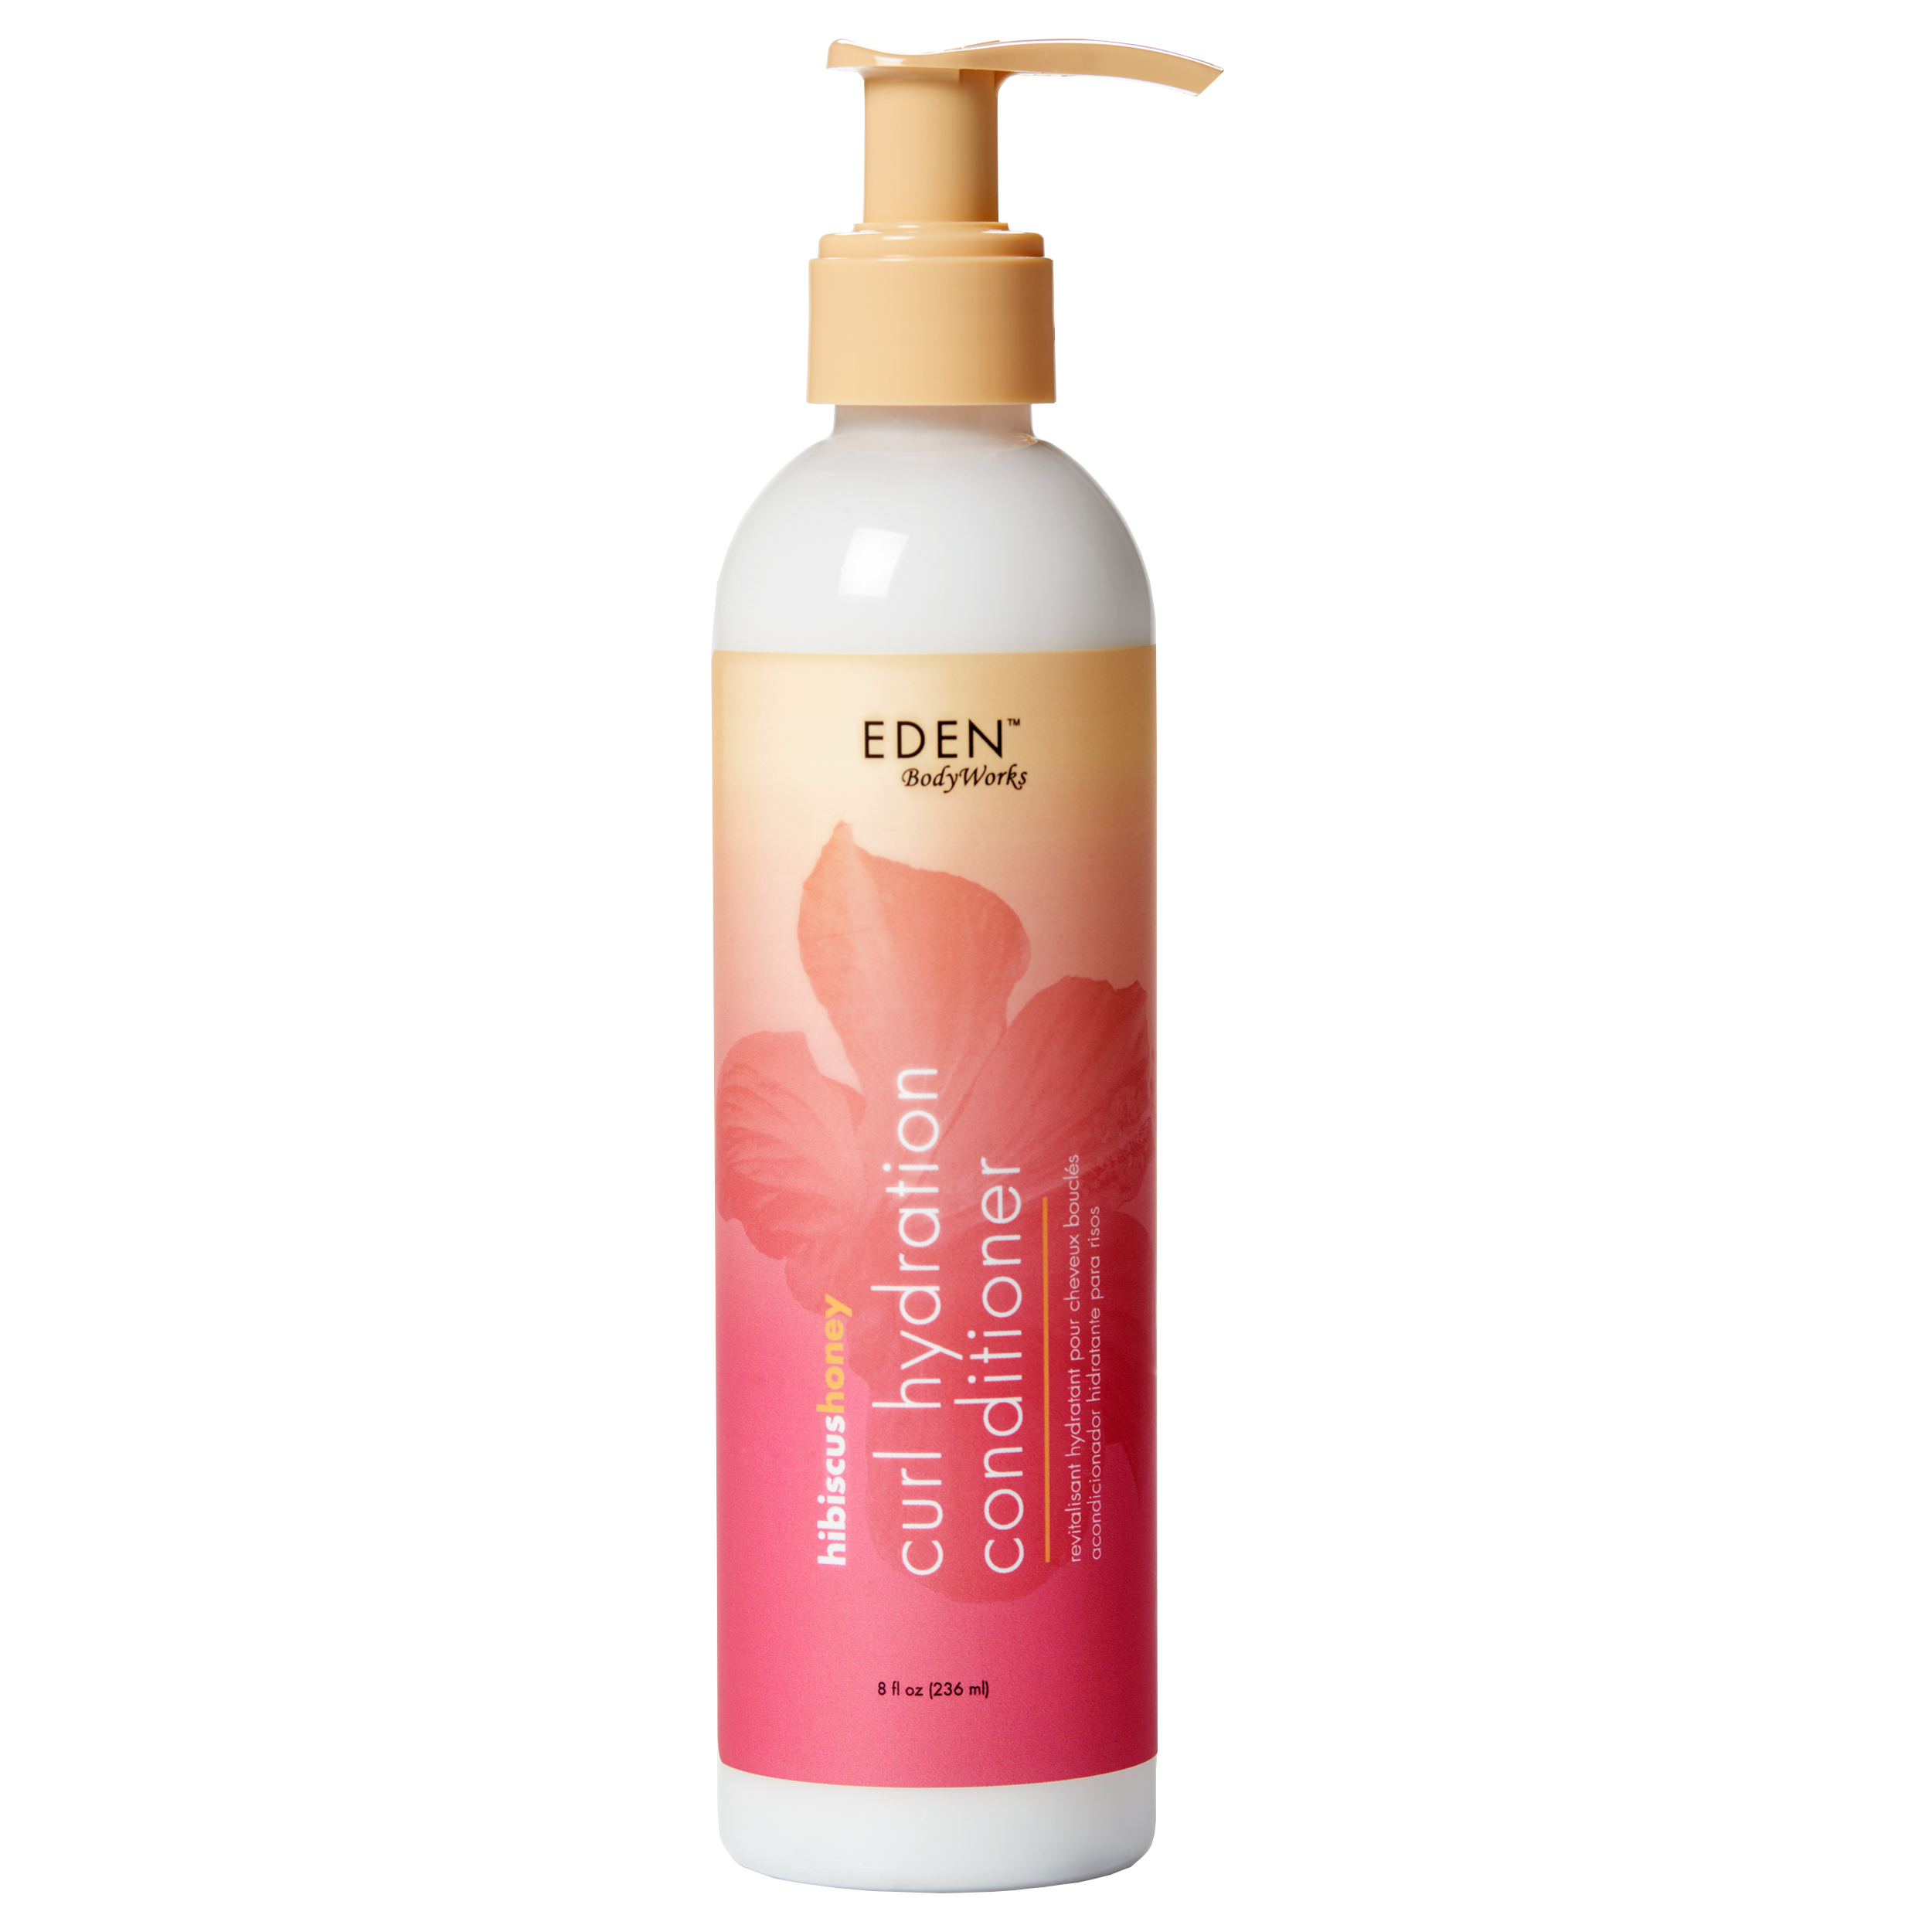 Hibiscus Honey Curl Hydration Conditioner - EDEN BodyWorks